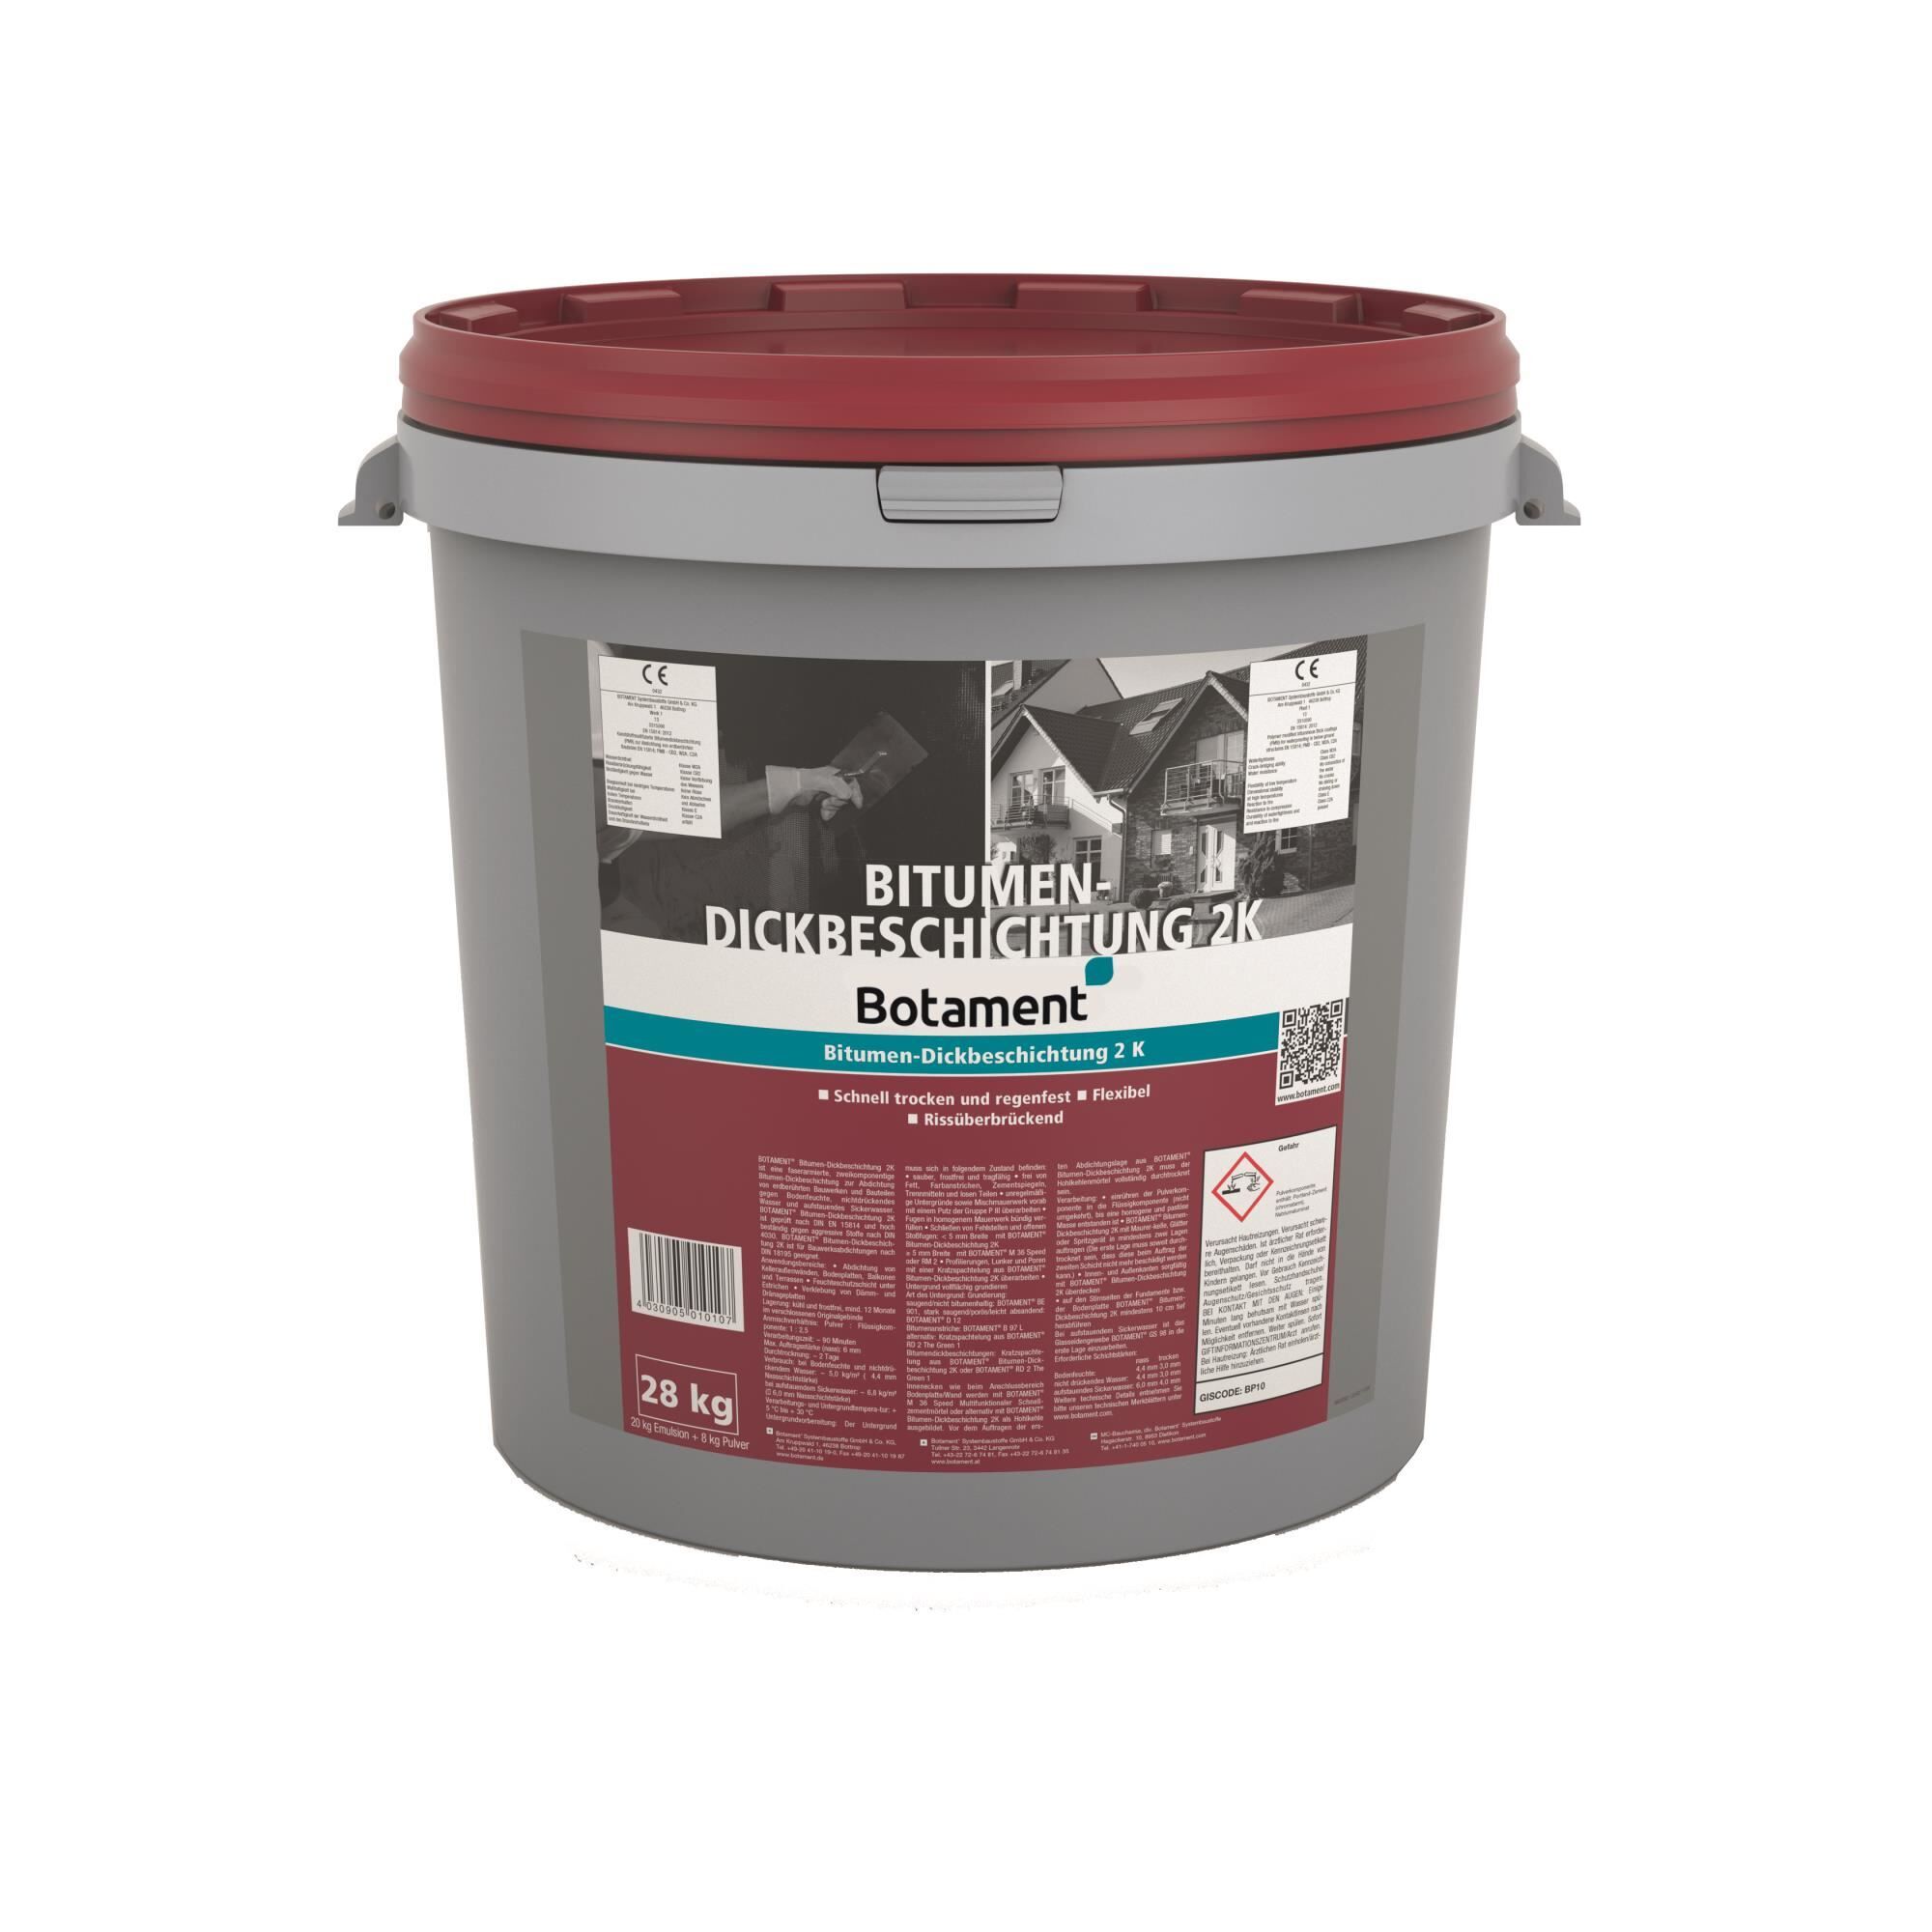 Bitumen- Dickbeschichtung 2K 28 kg Palette